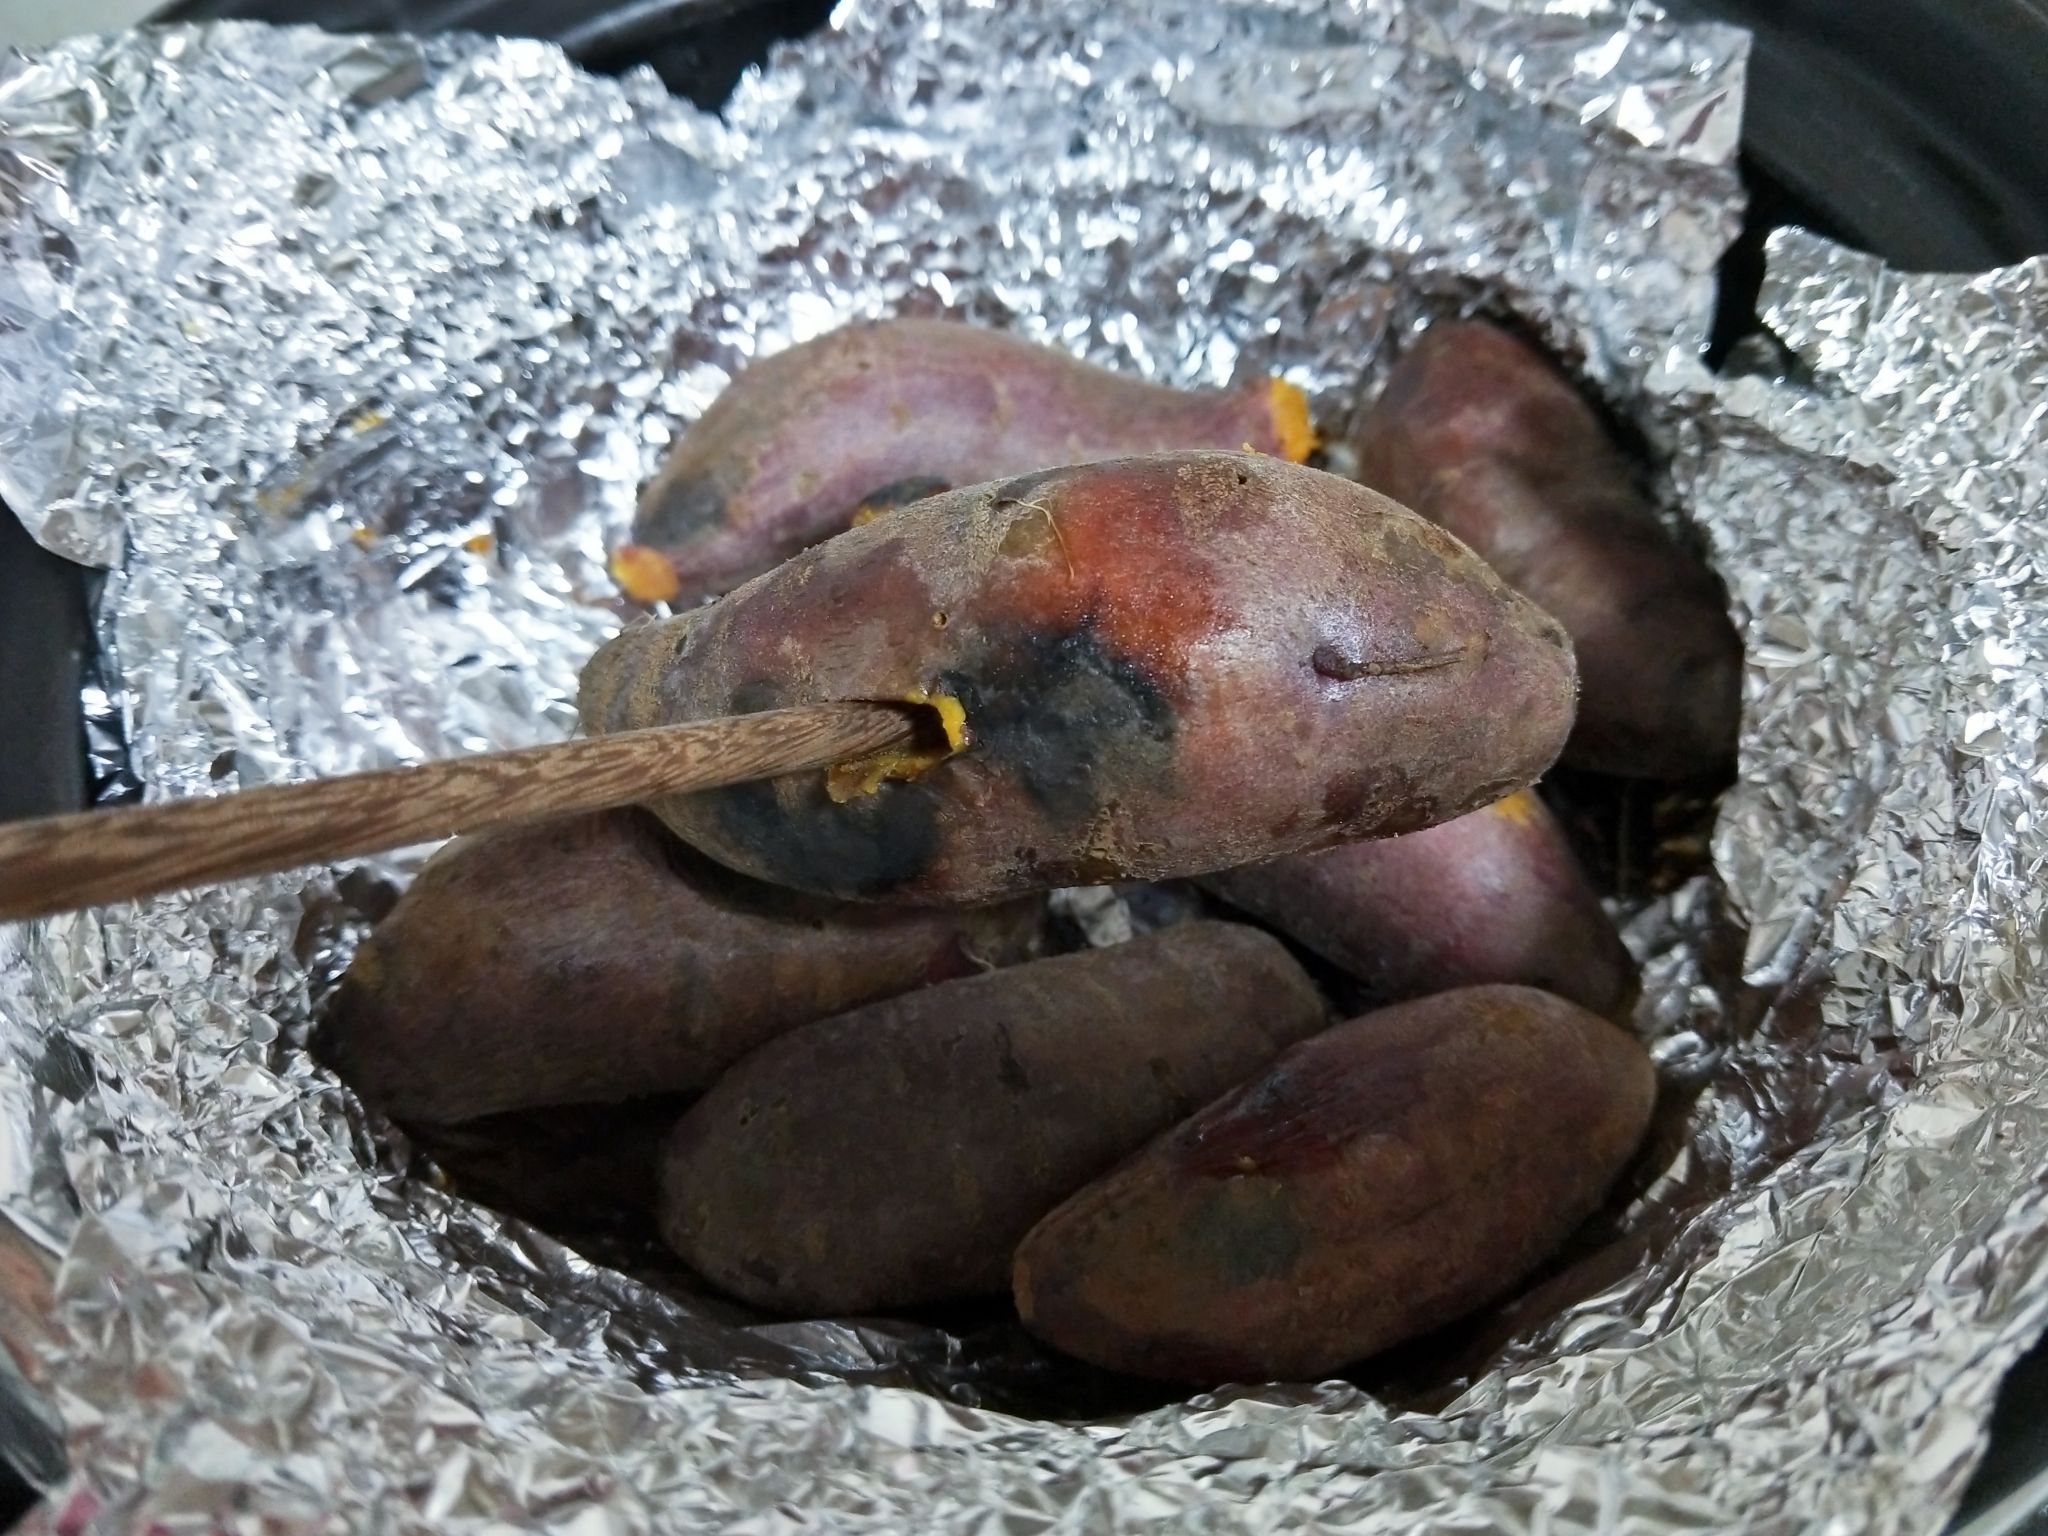 Baked Sweet Potatoes in Casserole recipe